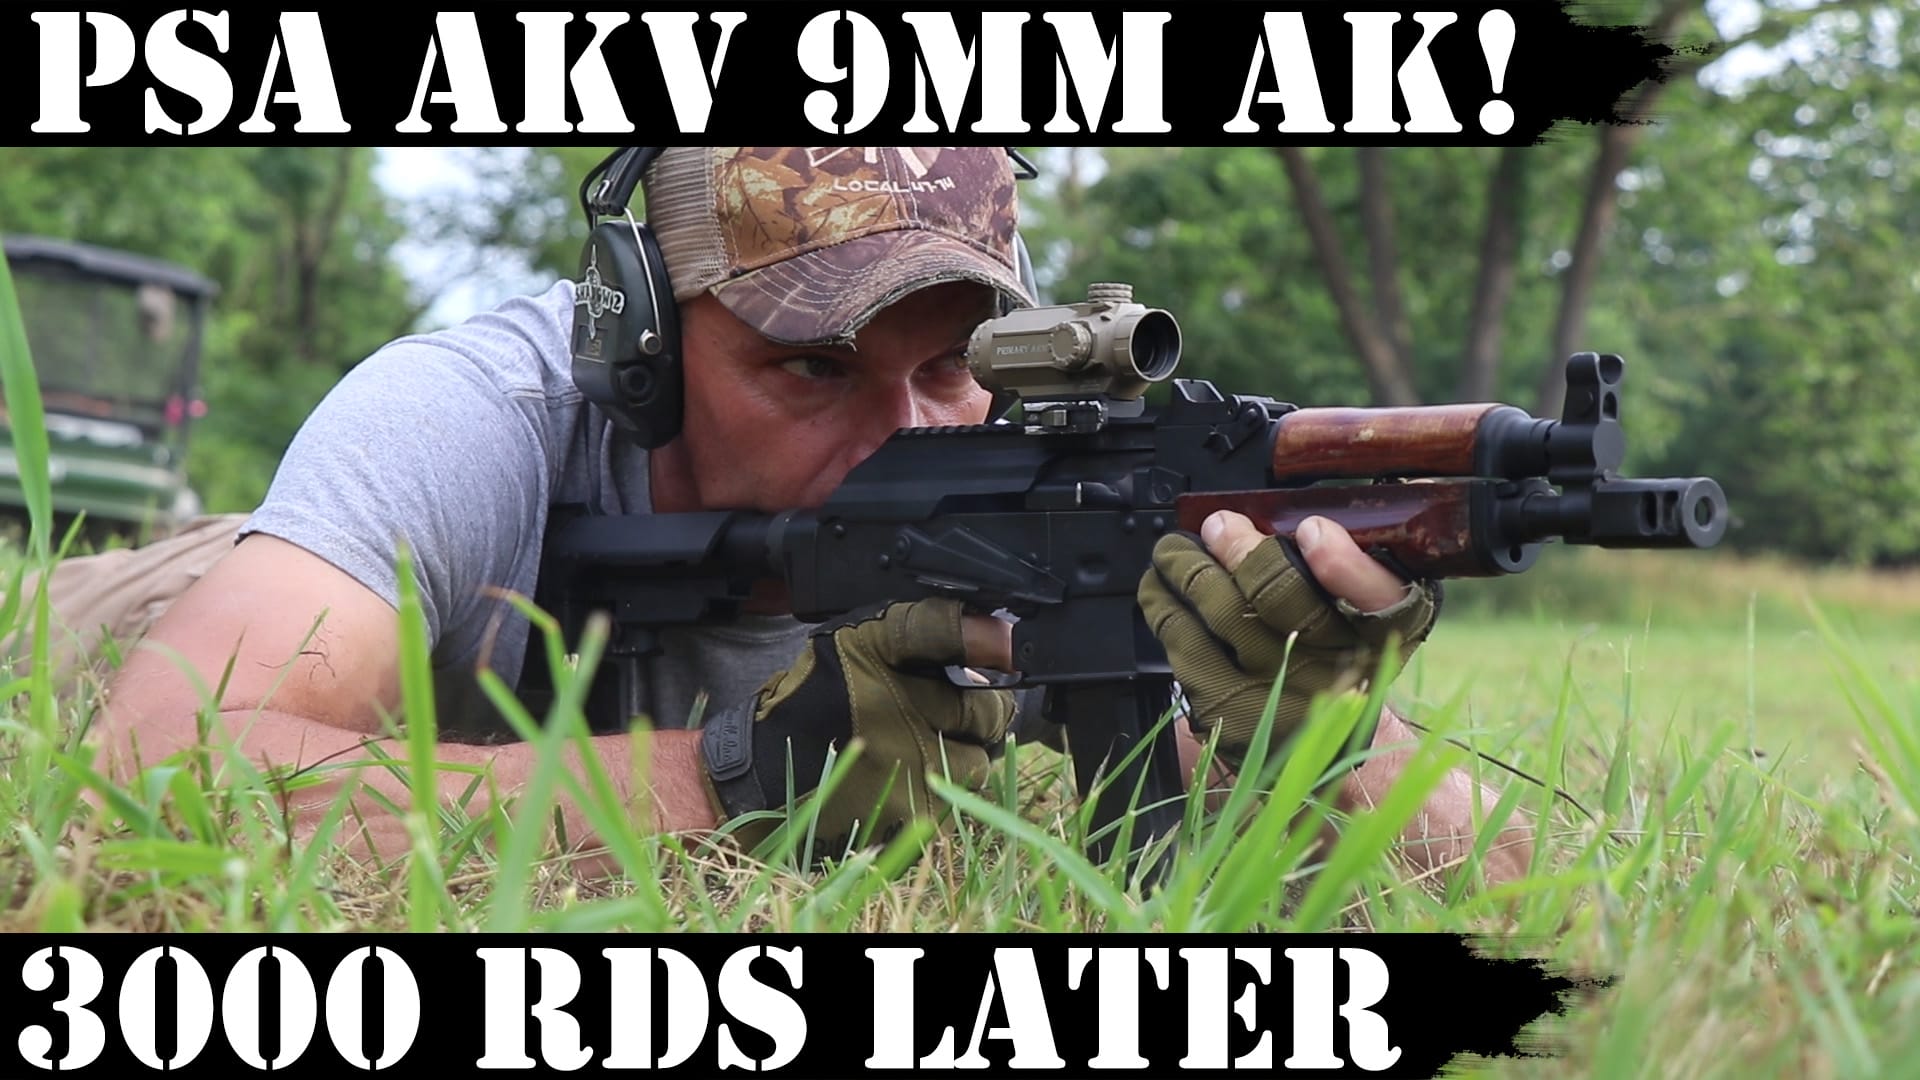 PSA AKV 9mm AK: 3,000 Rds Later!